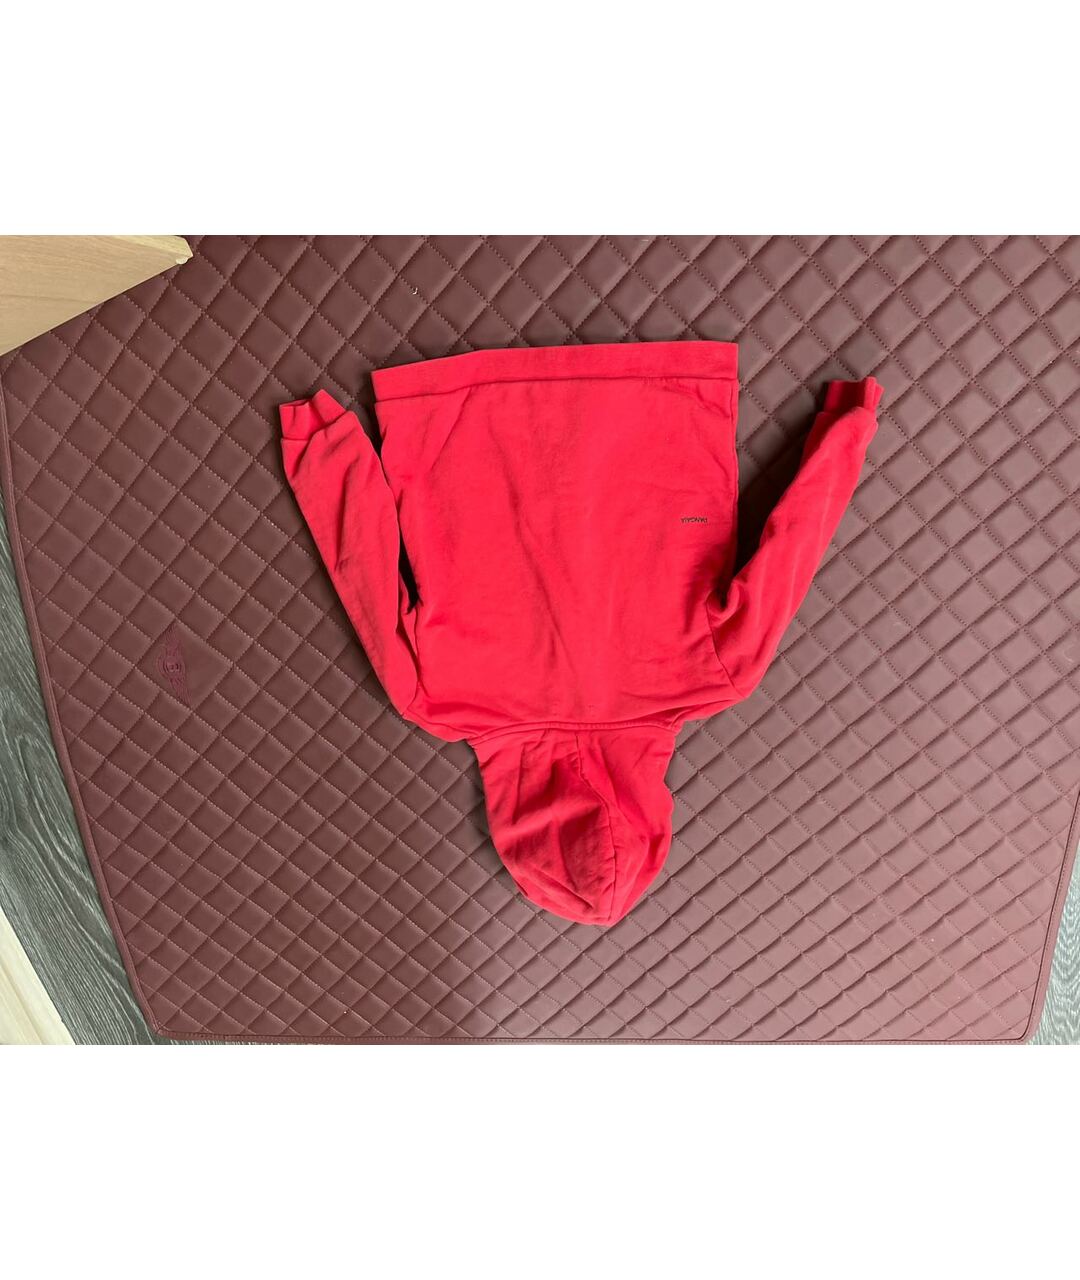 THE PANGAIA Красный хлопковый жакет / жилет, фото 2